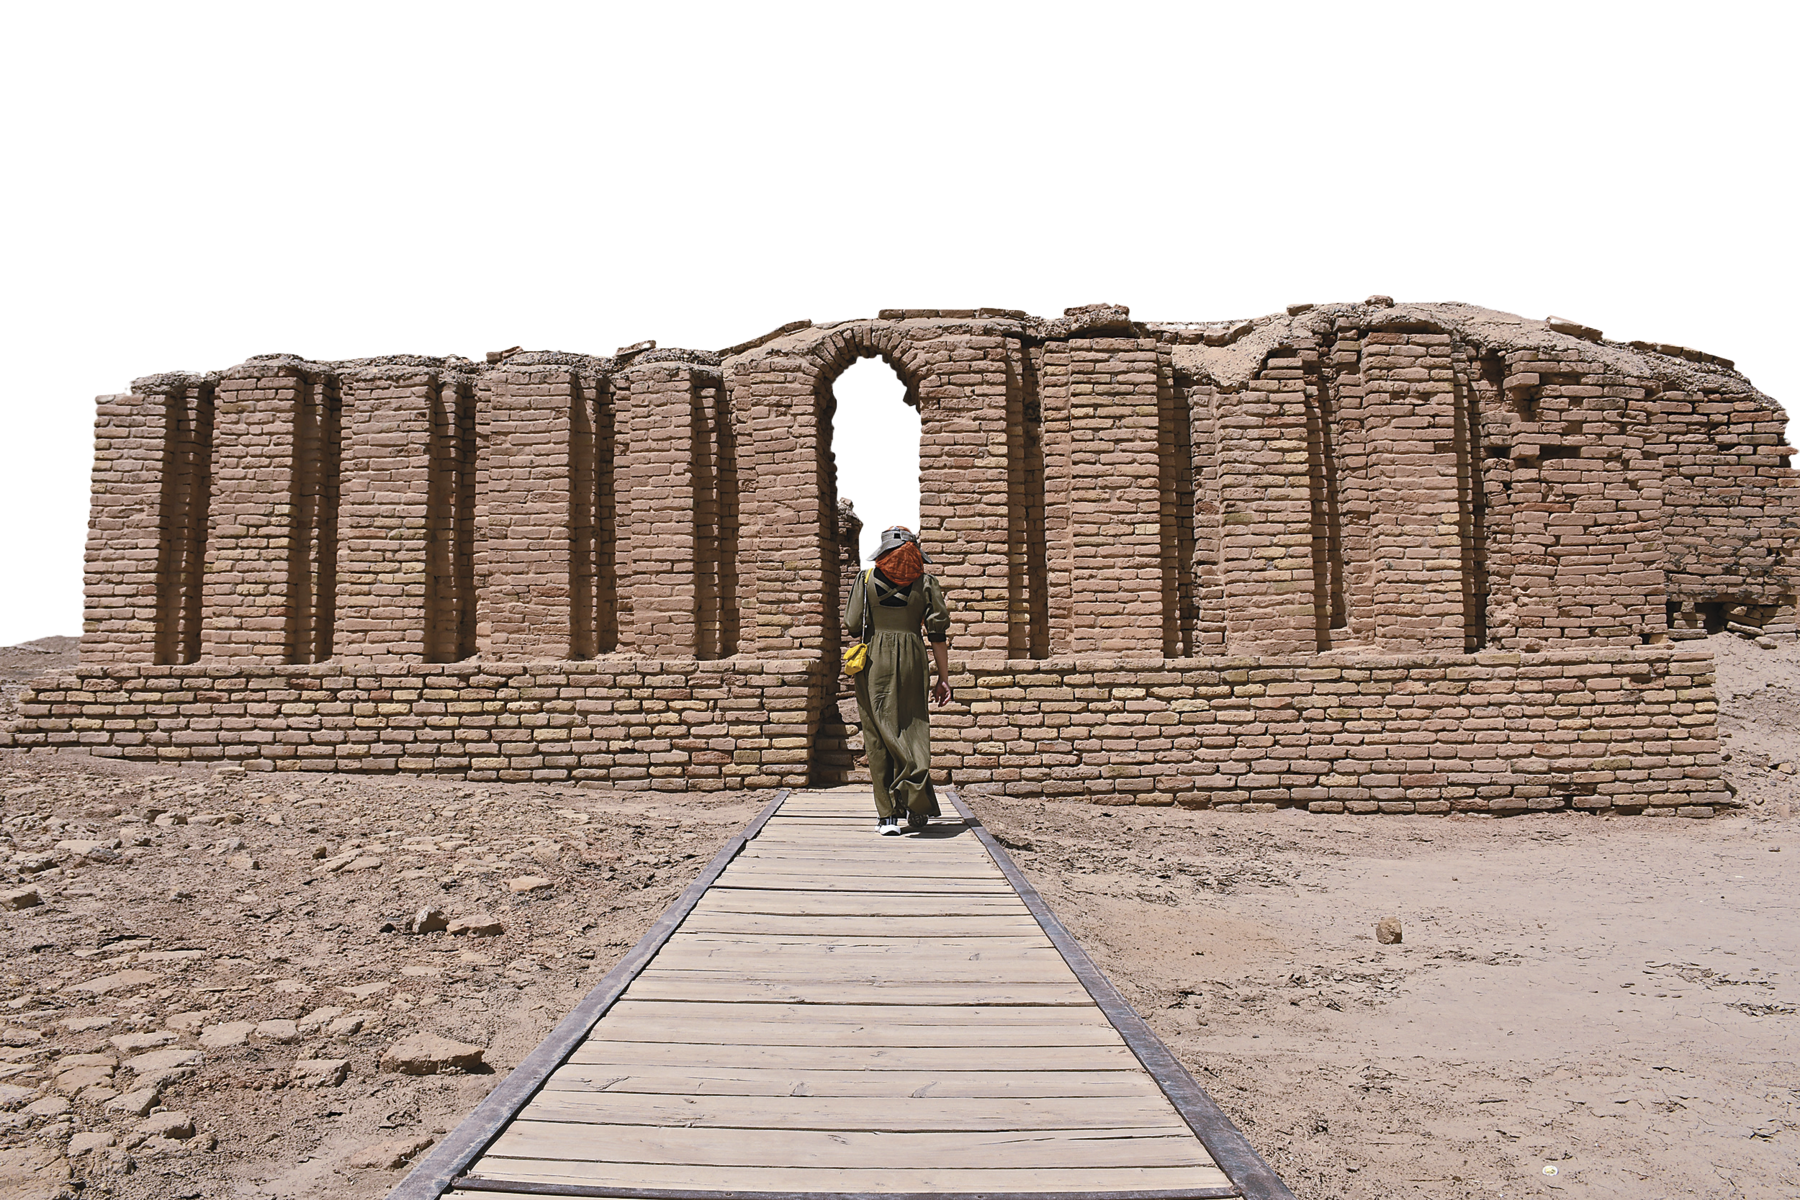 Fotografia. Vista de um muro de tijolos, com pequena abertura central, em ruínas. No centro, uma pessoa em pé sobre um calçamento de madeira rodeado de solo terroso, caminha em direção ao muro.